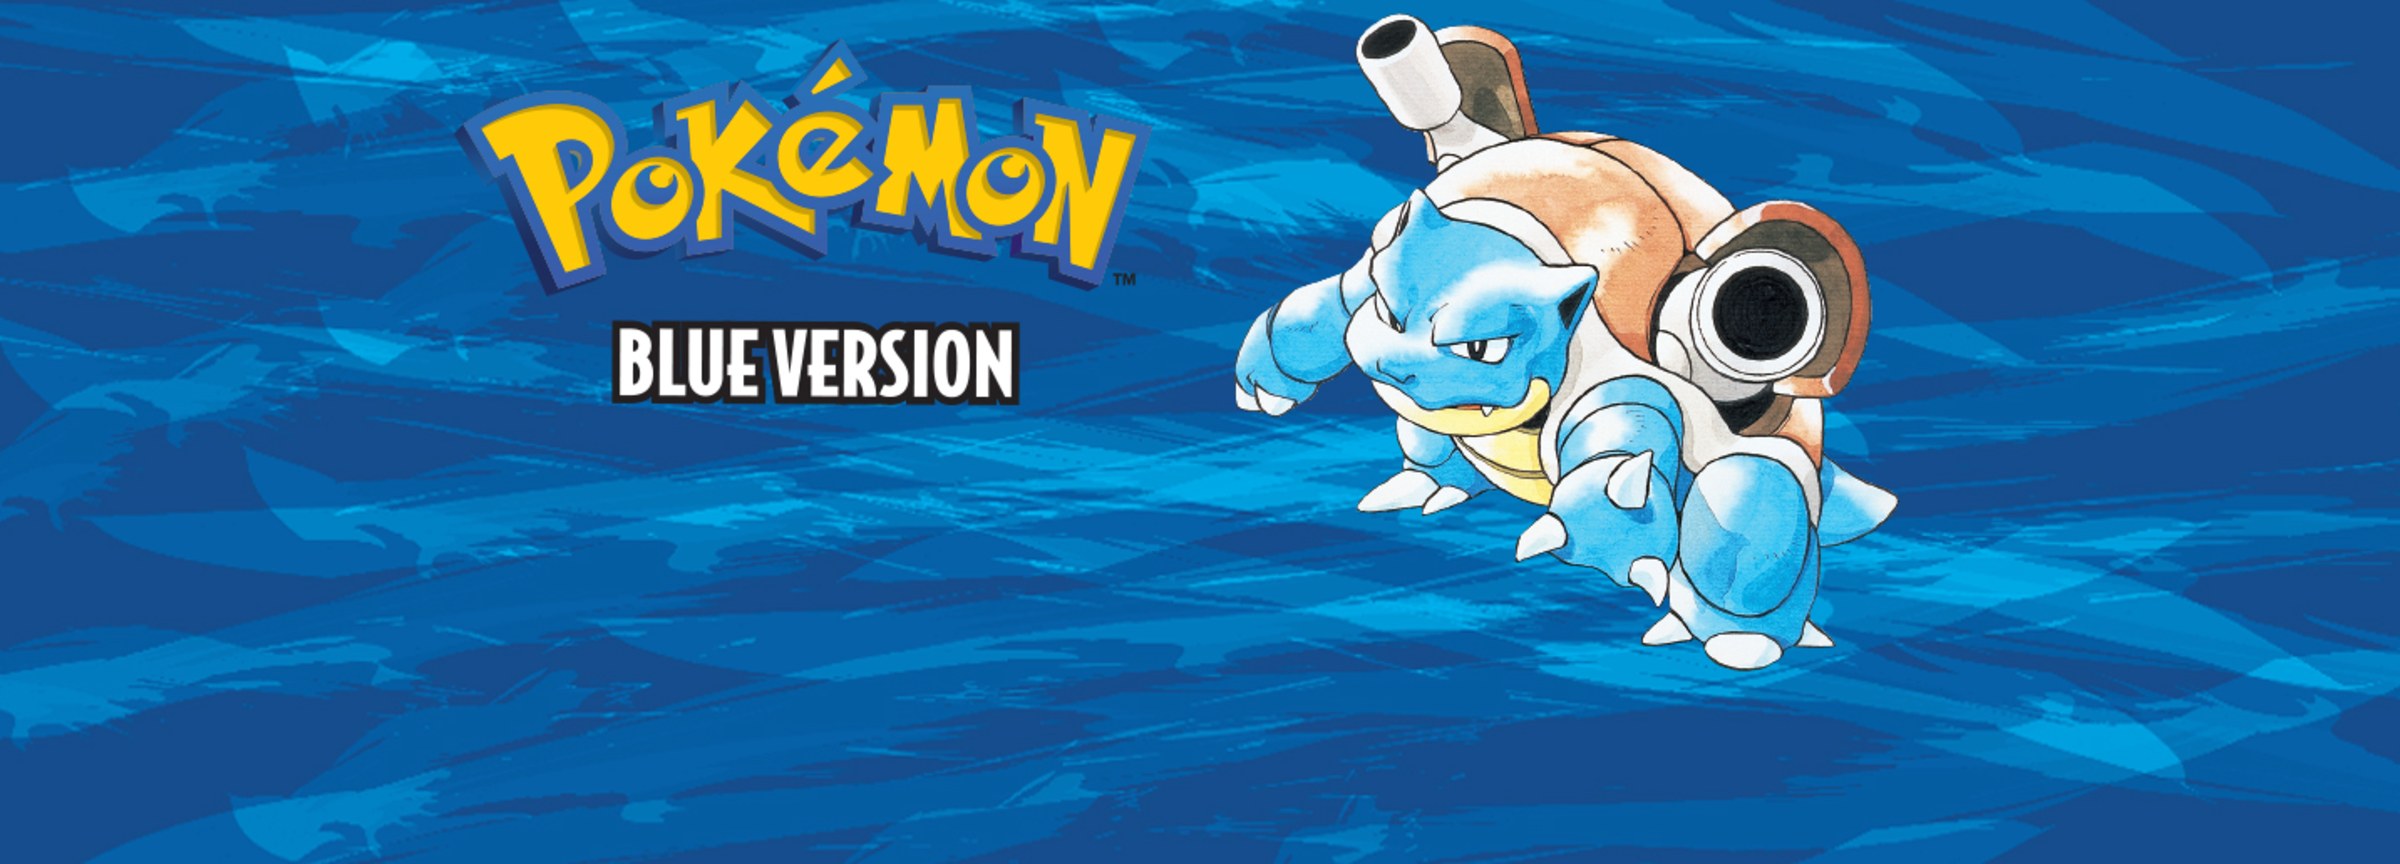 Pokémon: Red Version (Video Game 1996) - IMDb